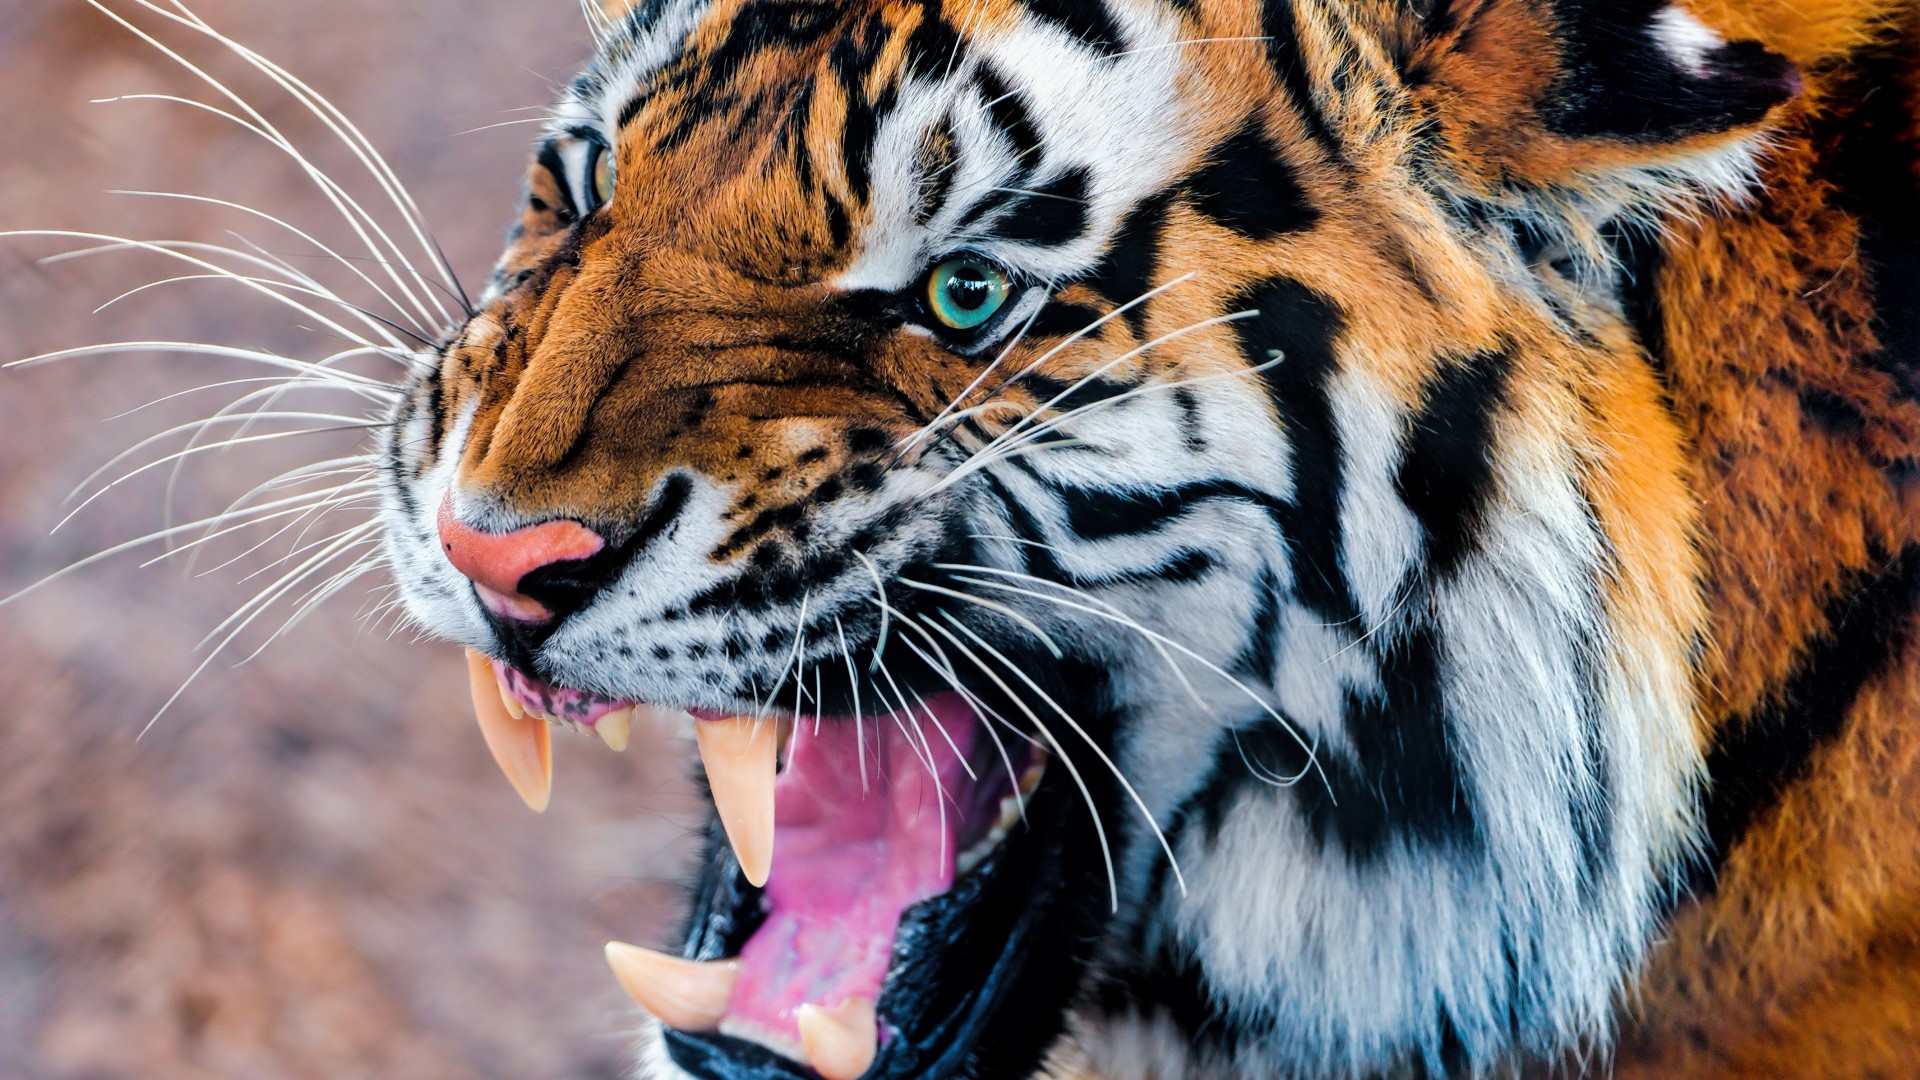 Tiger, snarling, eyes, fur (horizontal)